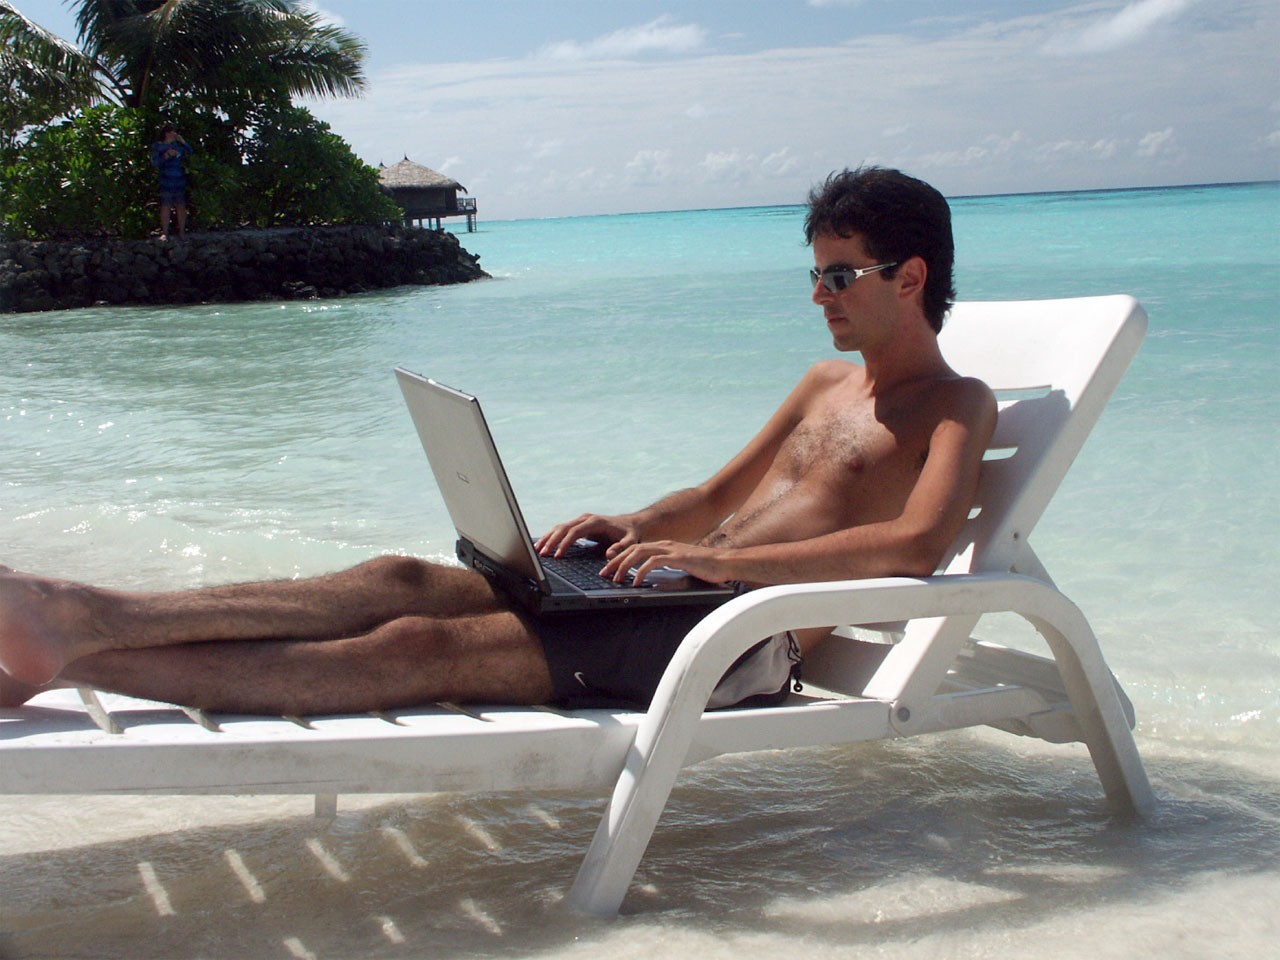 Uma relaxada no trabalho ou uma trabalhada no relaxo? (Foto: Creative Commons)